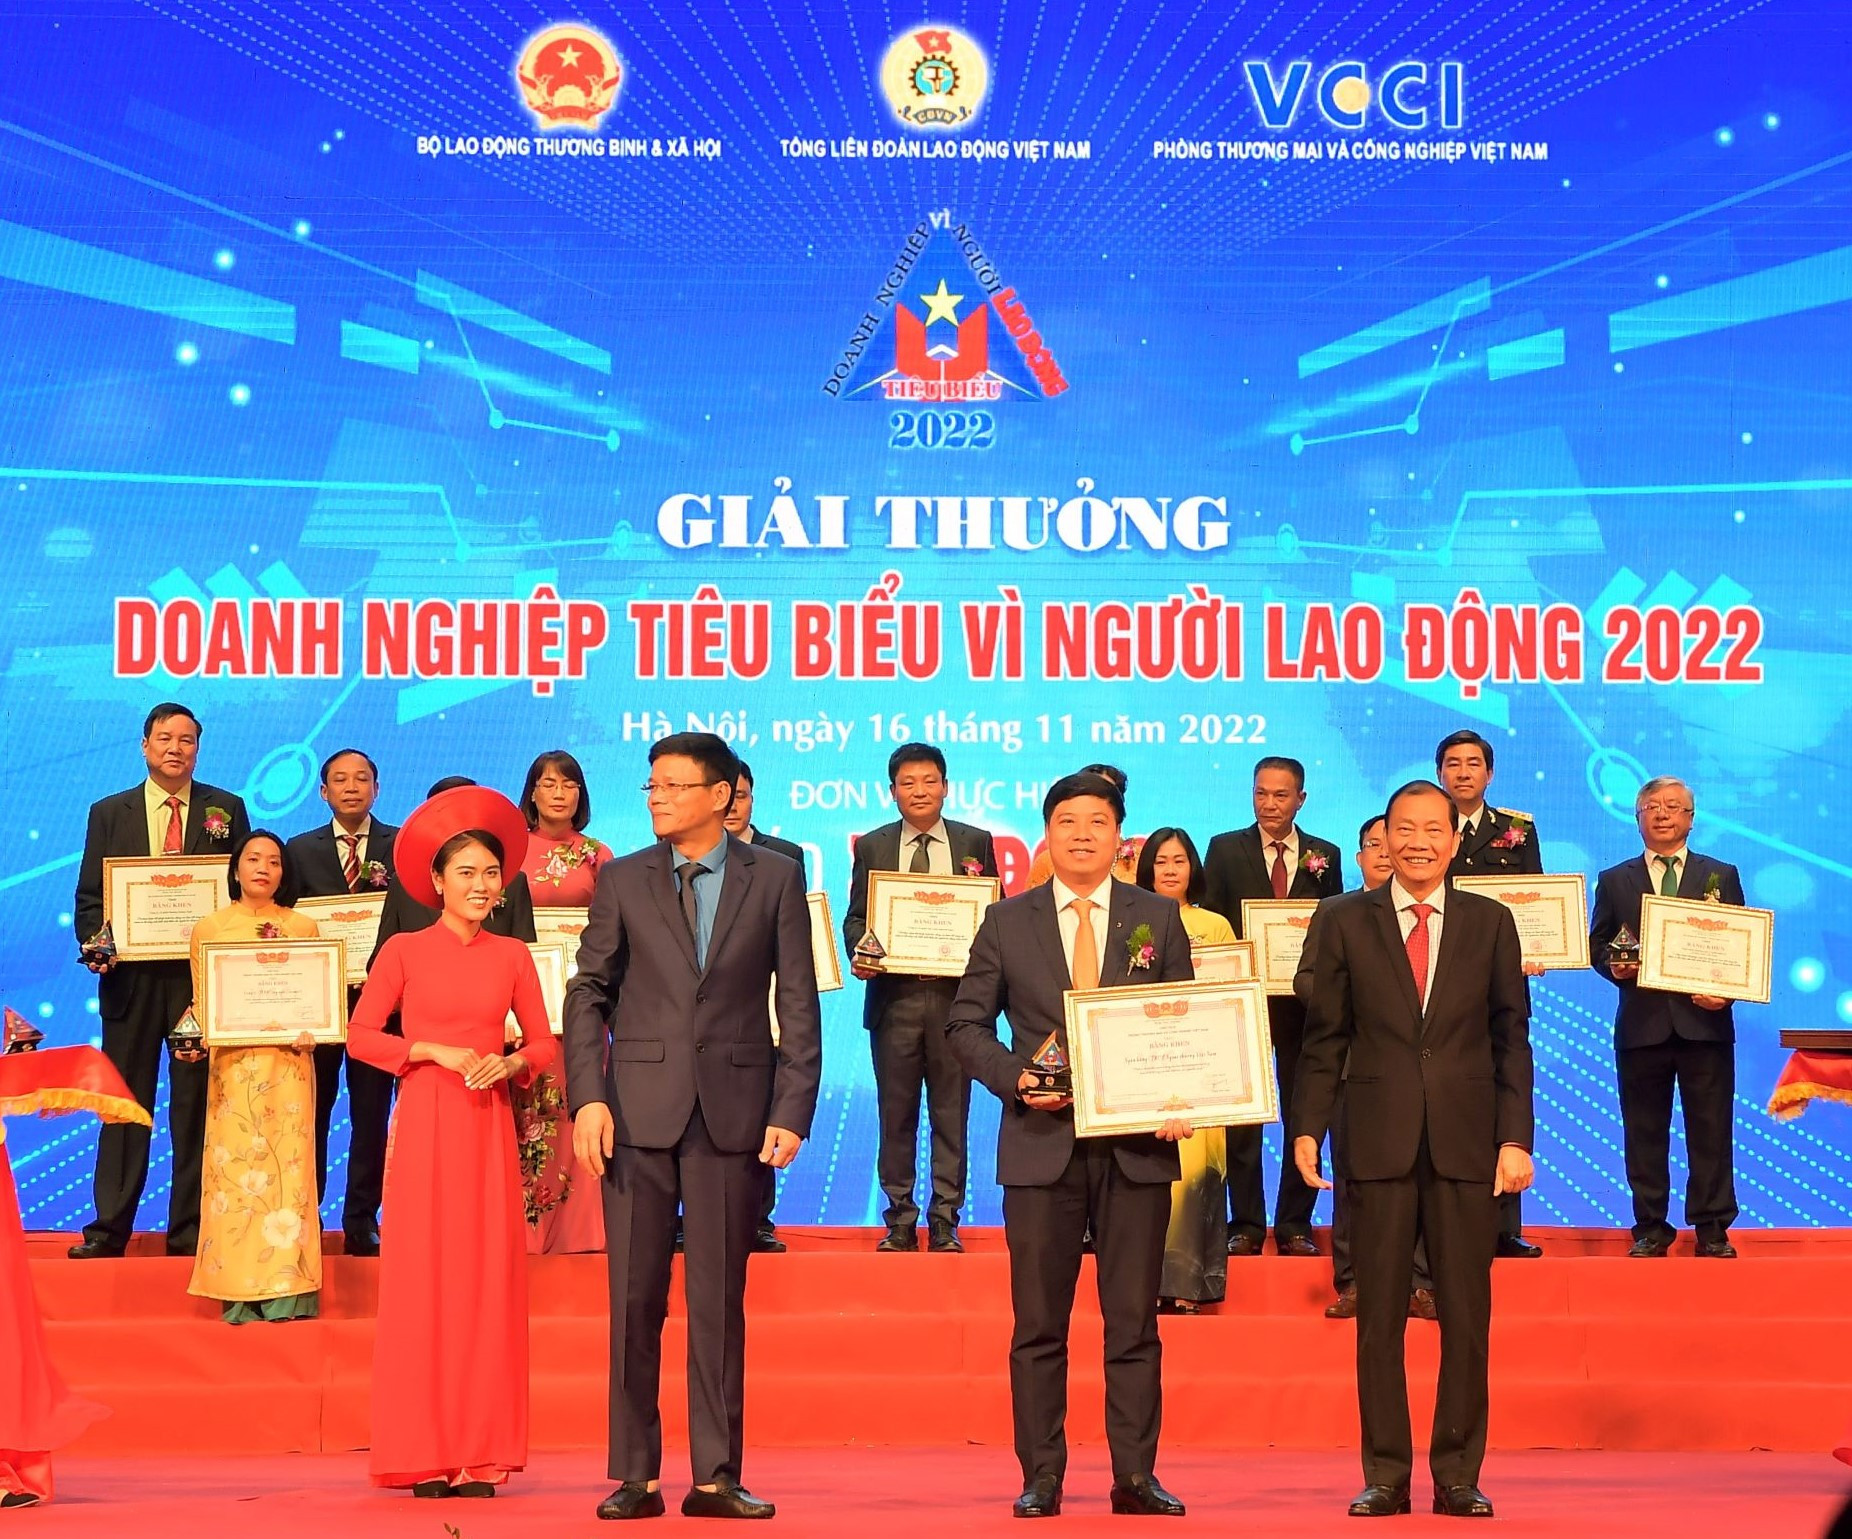 Vietcombank 3 năm liên tiếp nhận Giải thưởng Doanh nghiệp tiêu biểu vì người lao động